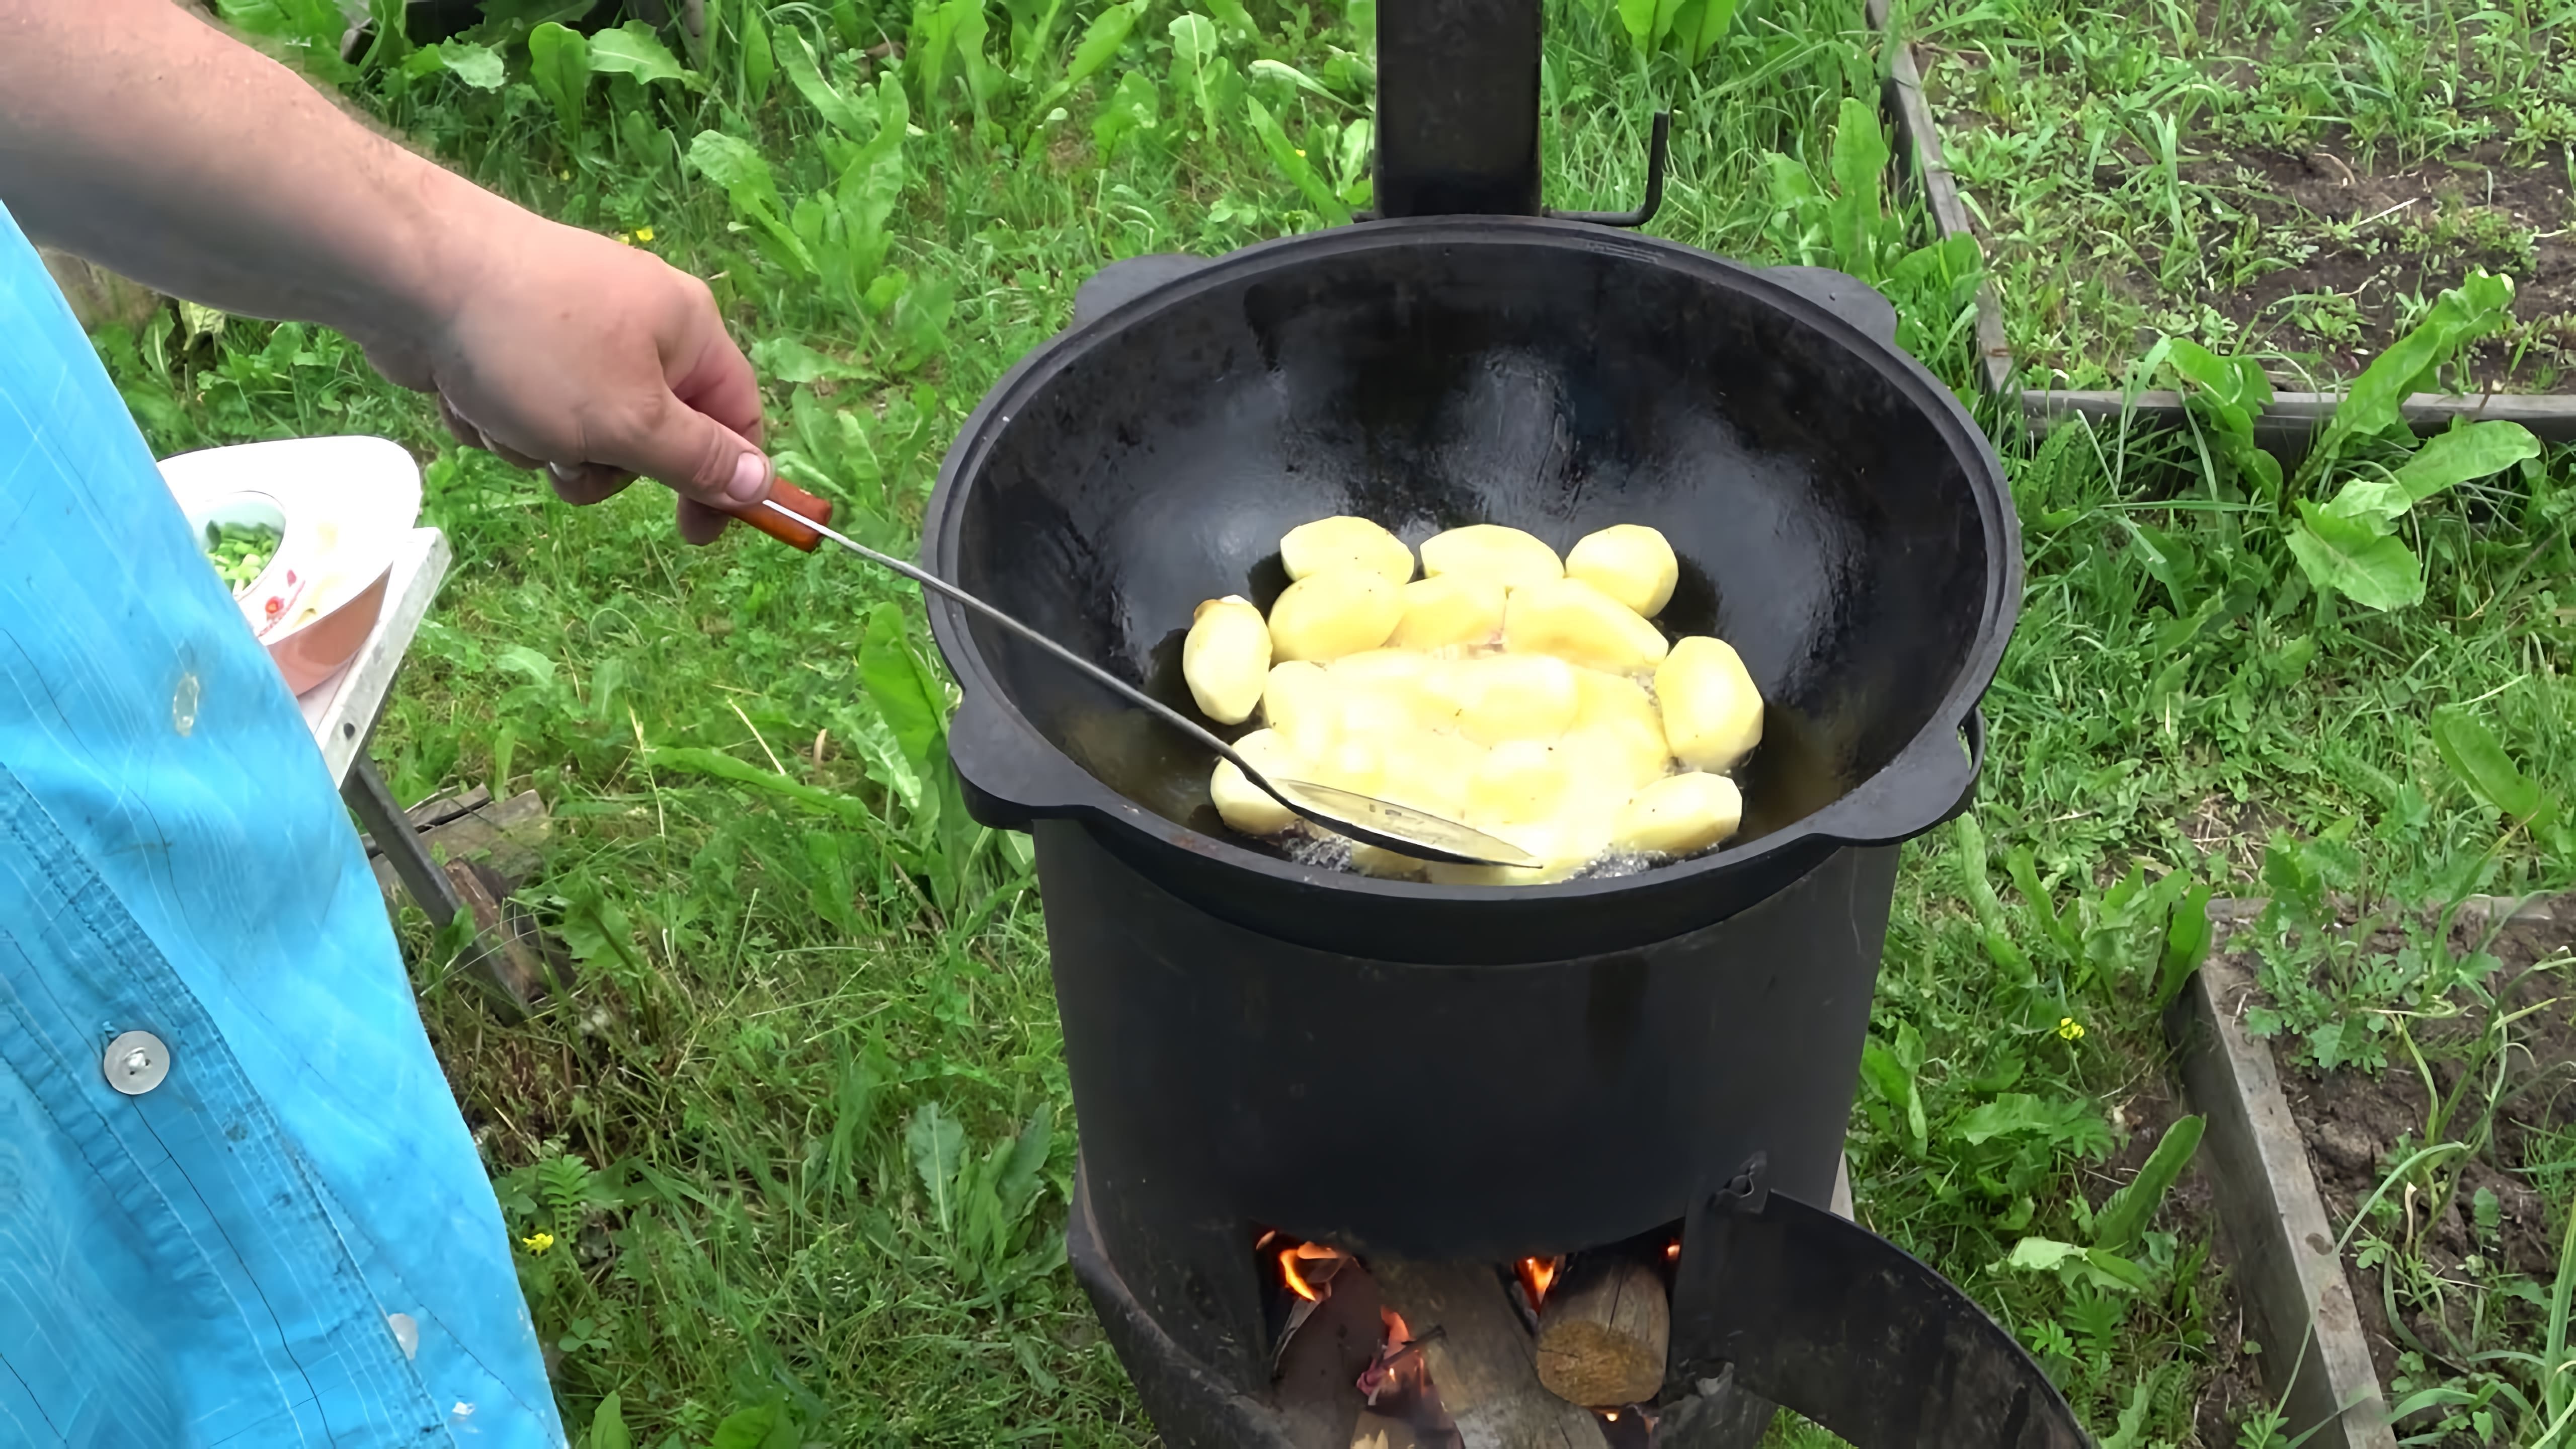 В этом видео демонстрируется процесс приготовления картошки с мясом в казане